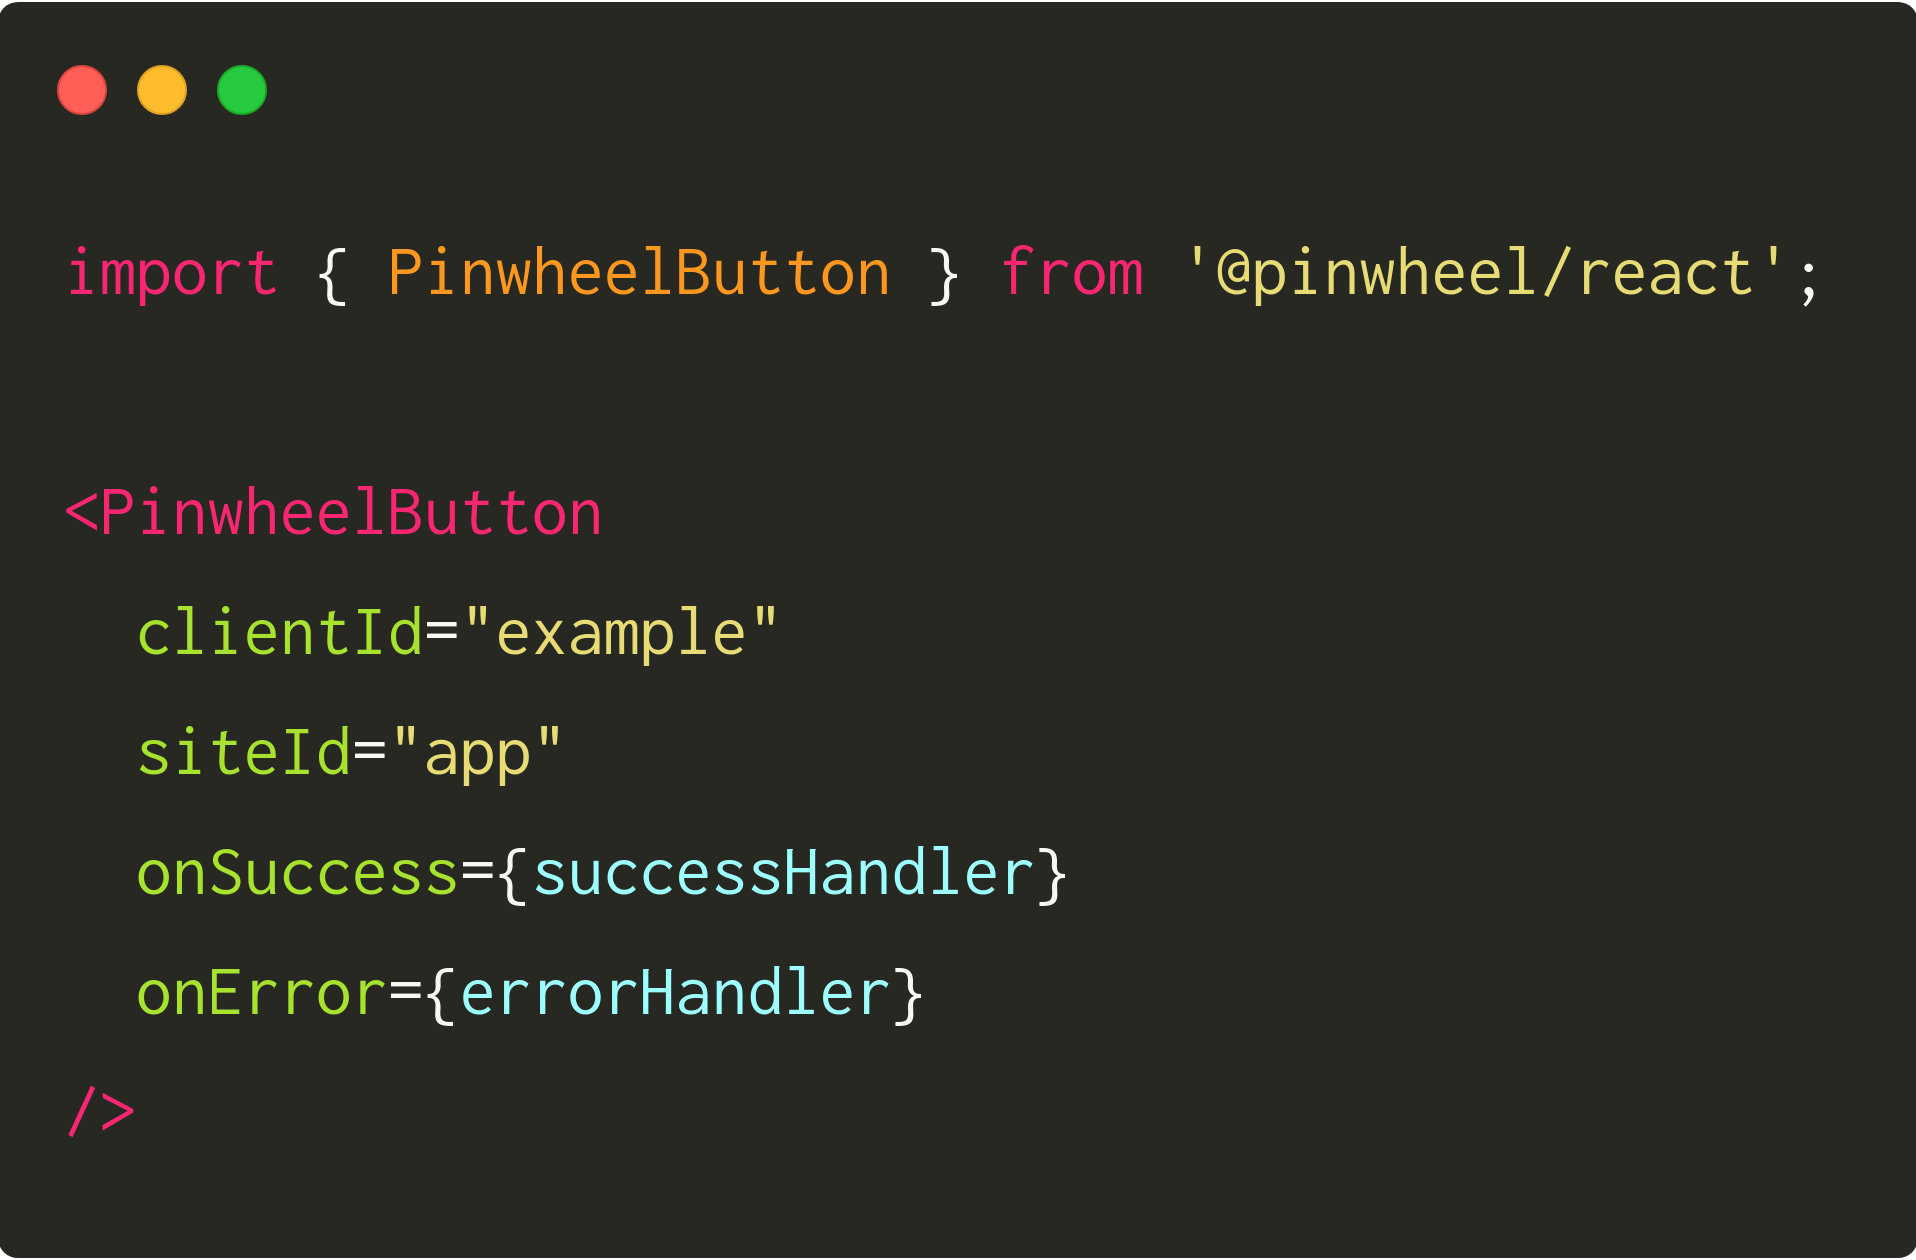 Snippet of Pinwheel React SDK Code